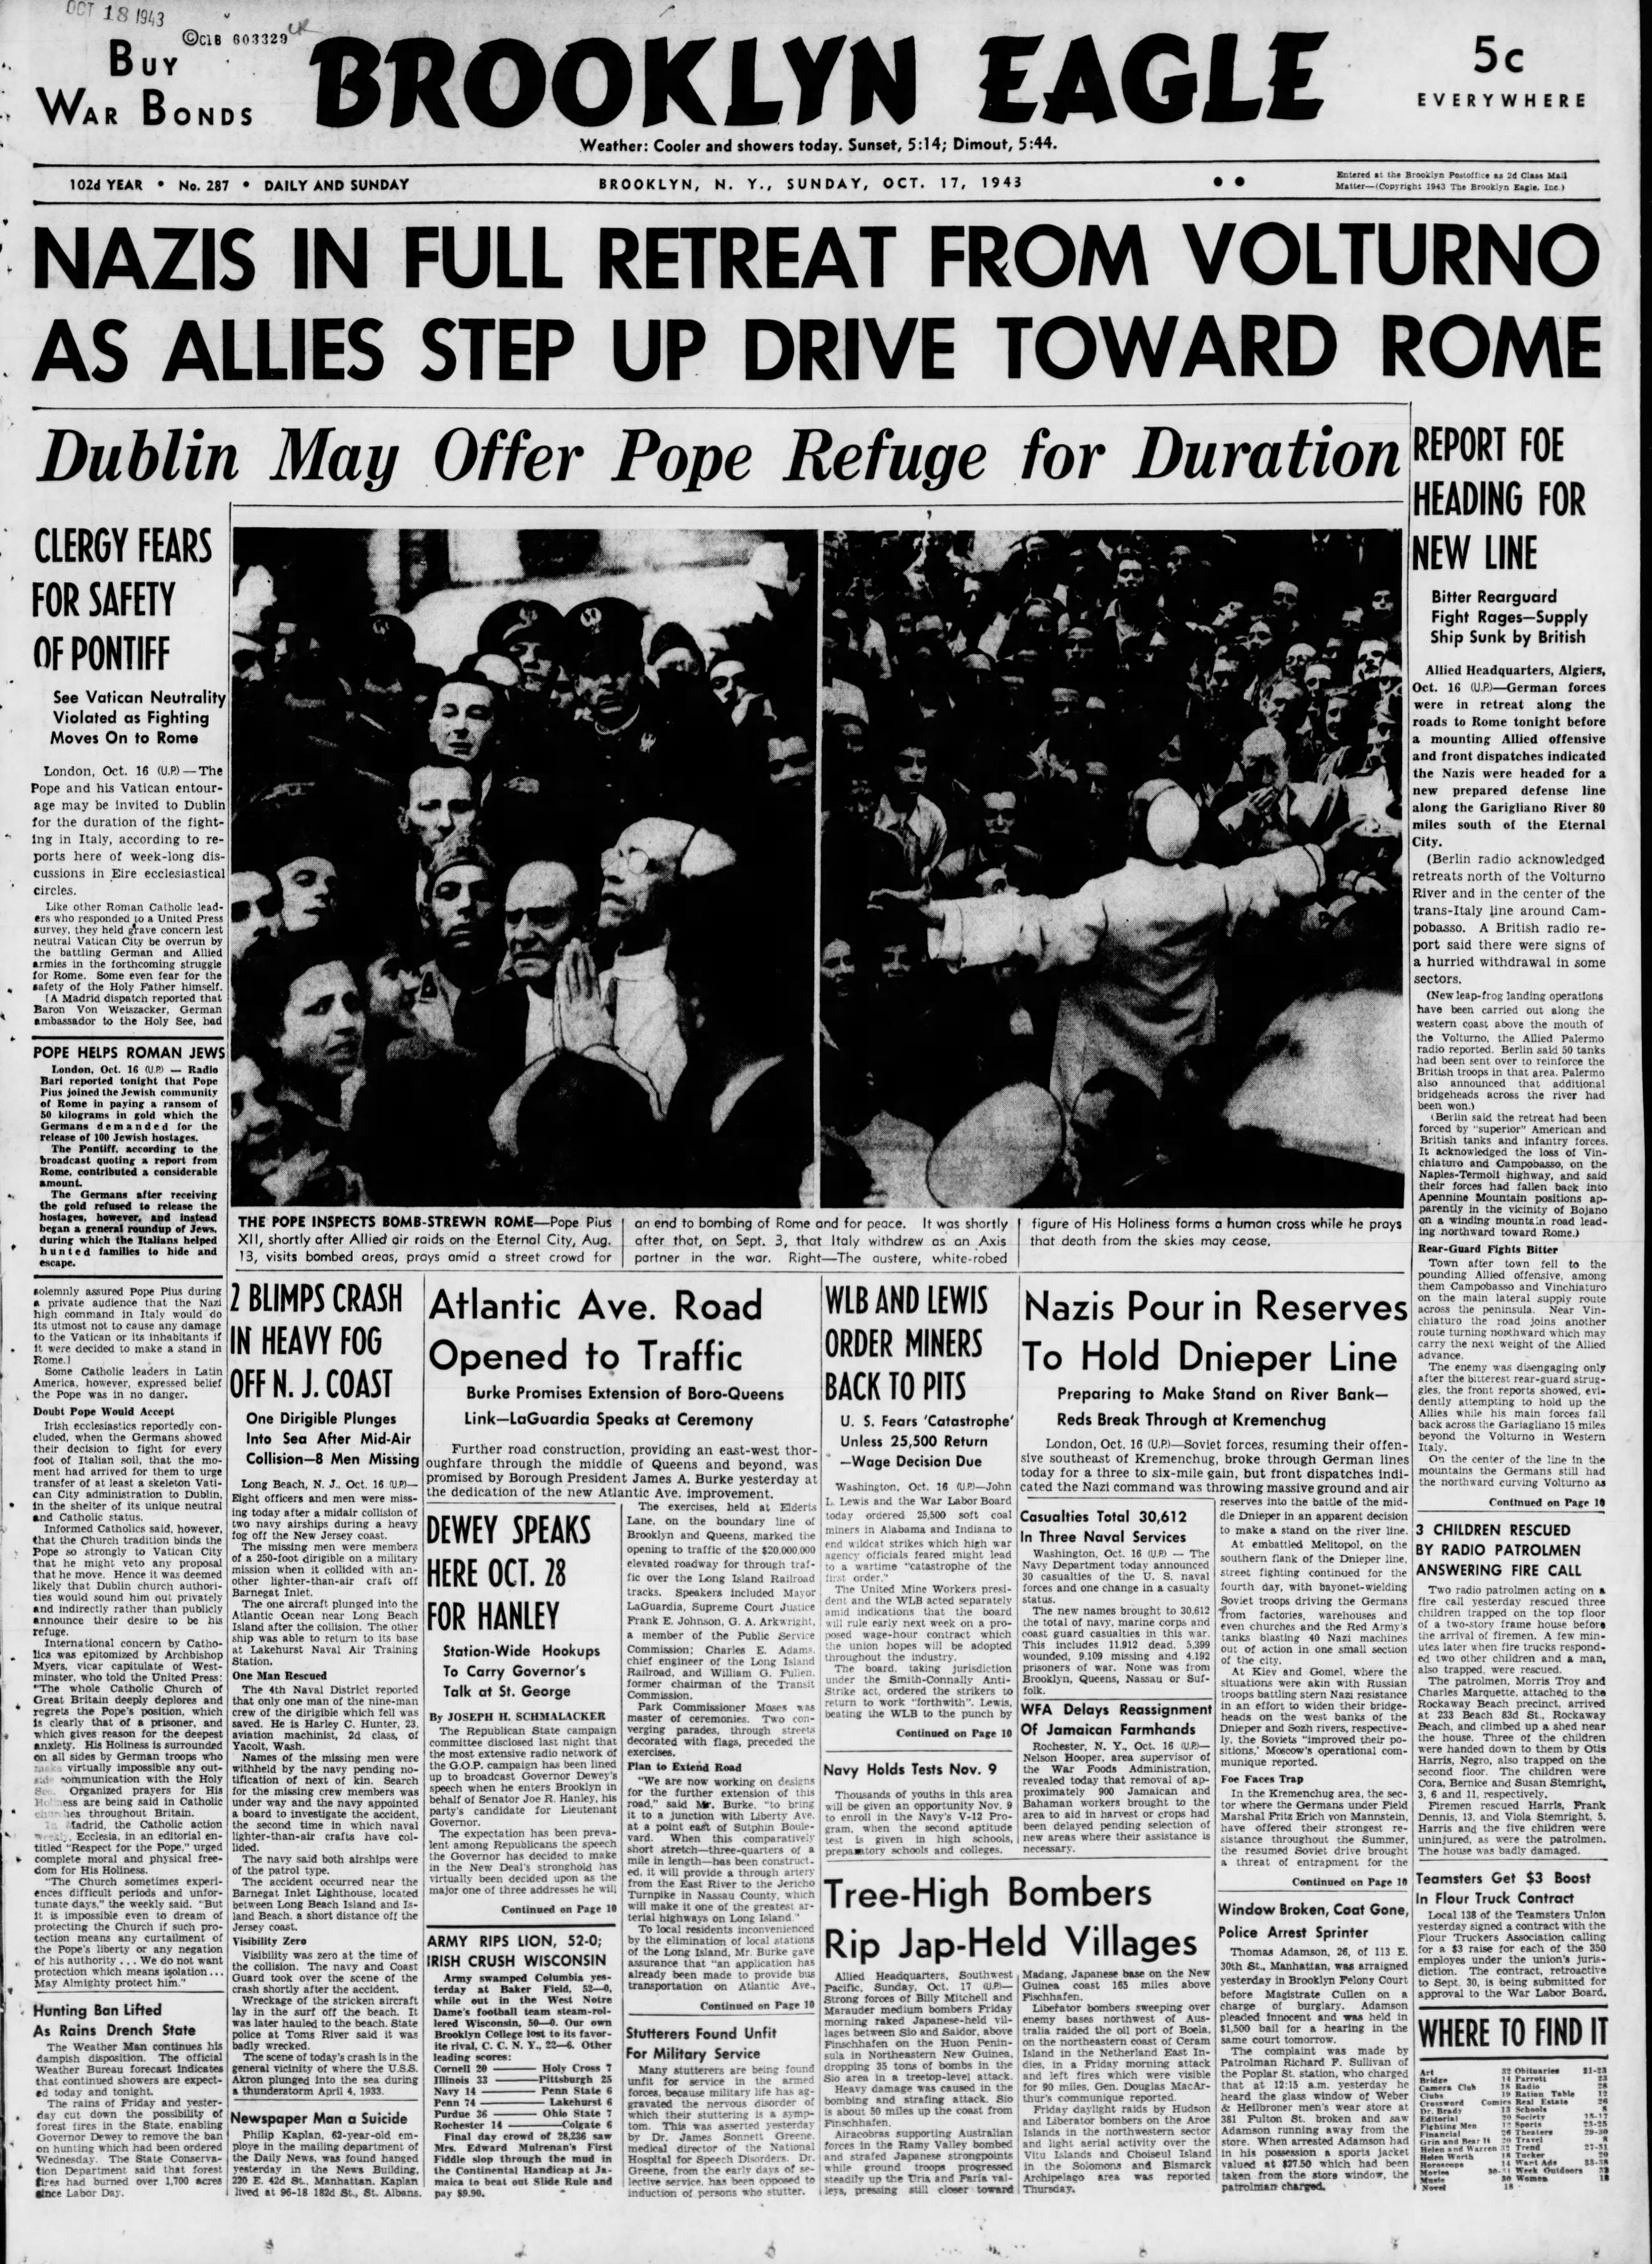 The_Brooklyn_Daily_Eagle_Sun__Oct_17__1943_.jpg